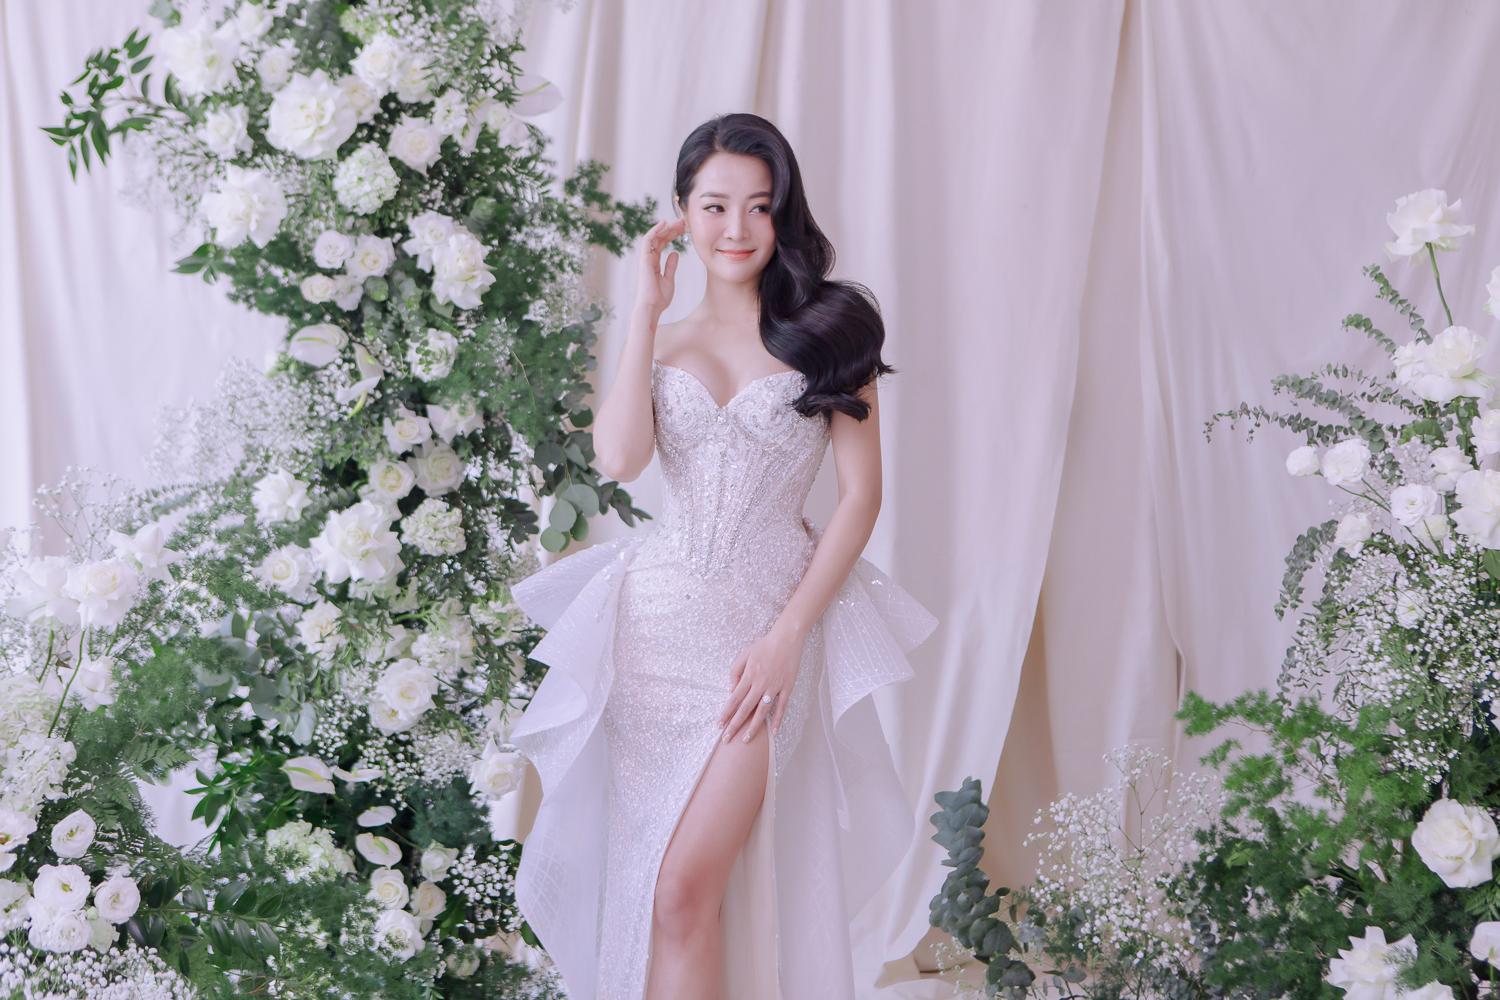 Hé lộ bộ ảnh cưới của Karen Nguyễn cùng ông xã: Áo cưới được đính kết hơn 1000 viên pha lê - ảnh 2